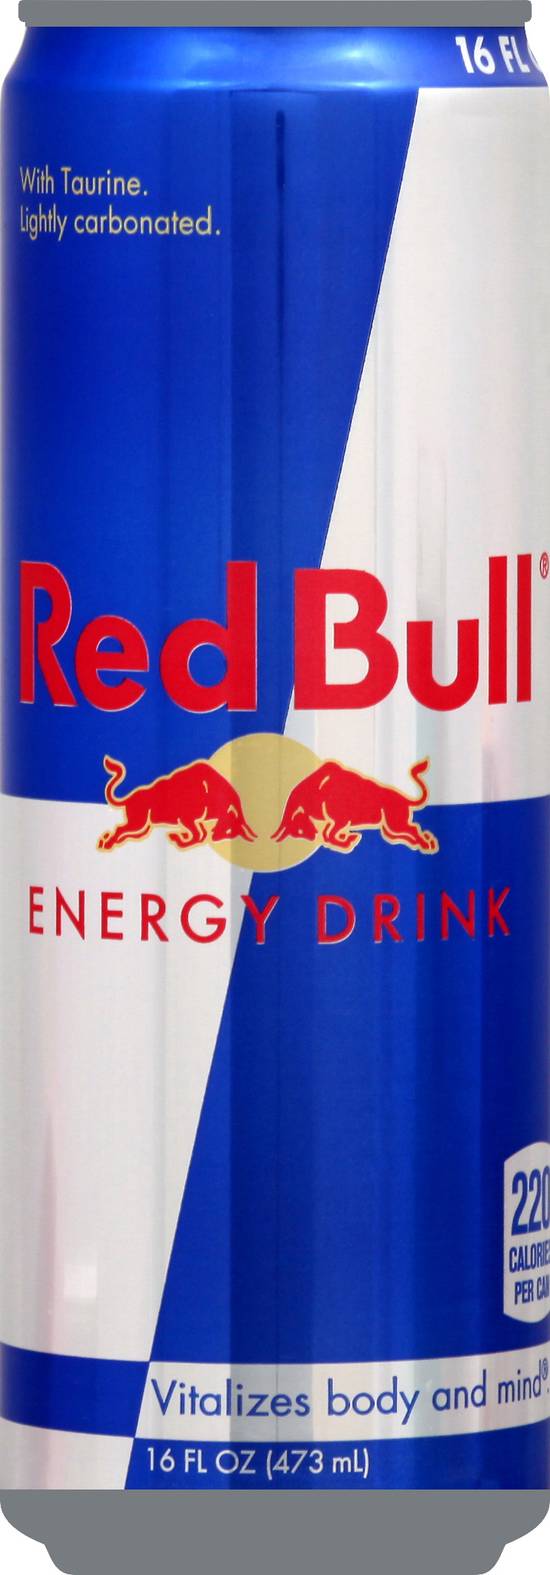 Red Bull Energy Drink (16 fl oz)